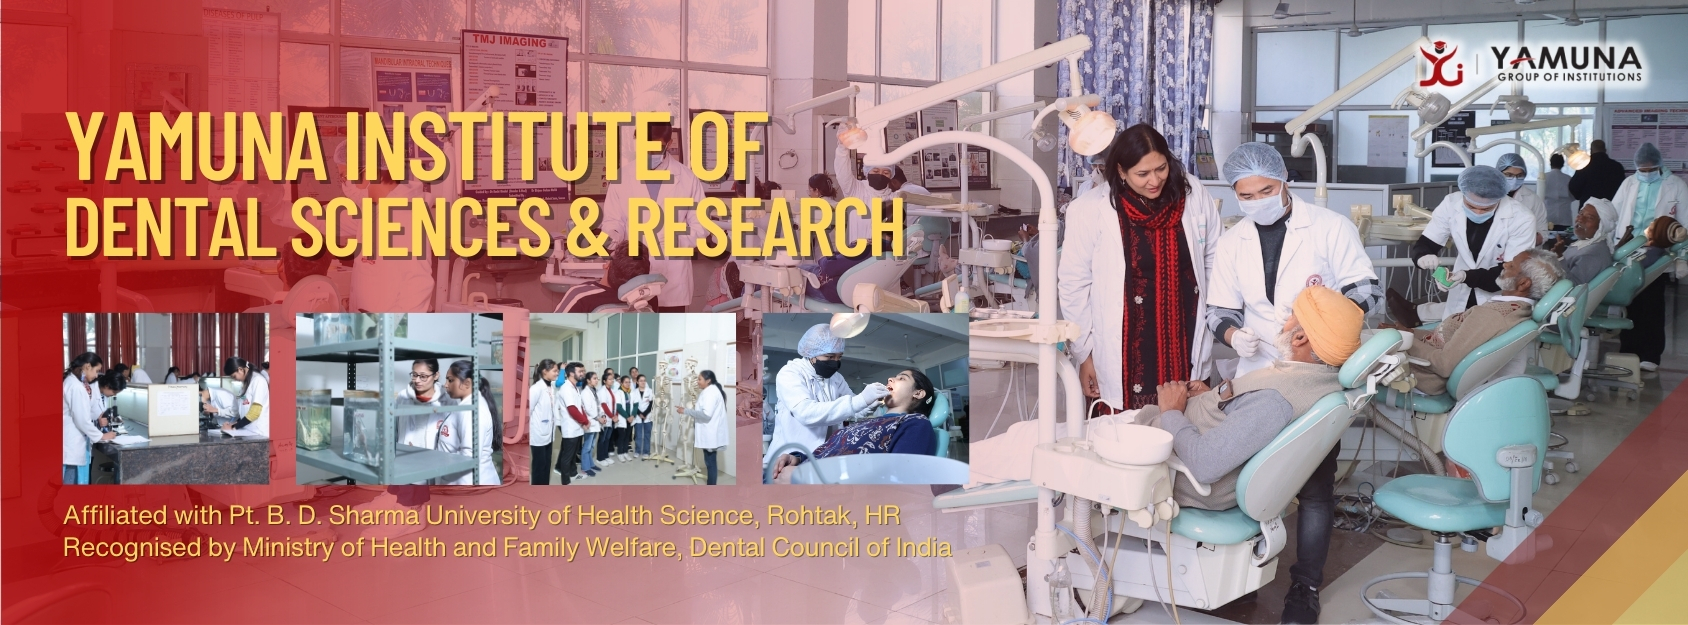 Yamuna Institute of Dental Sciences & Research